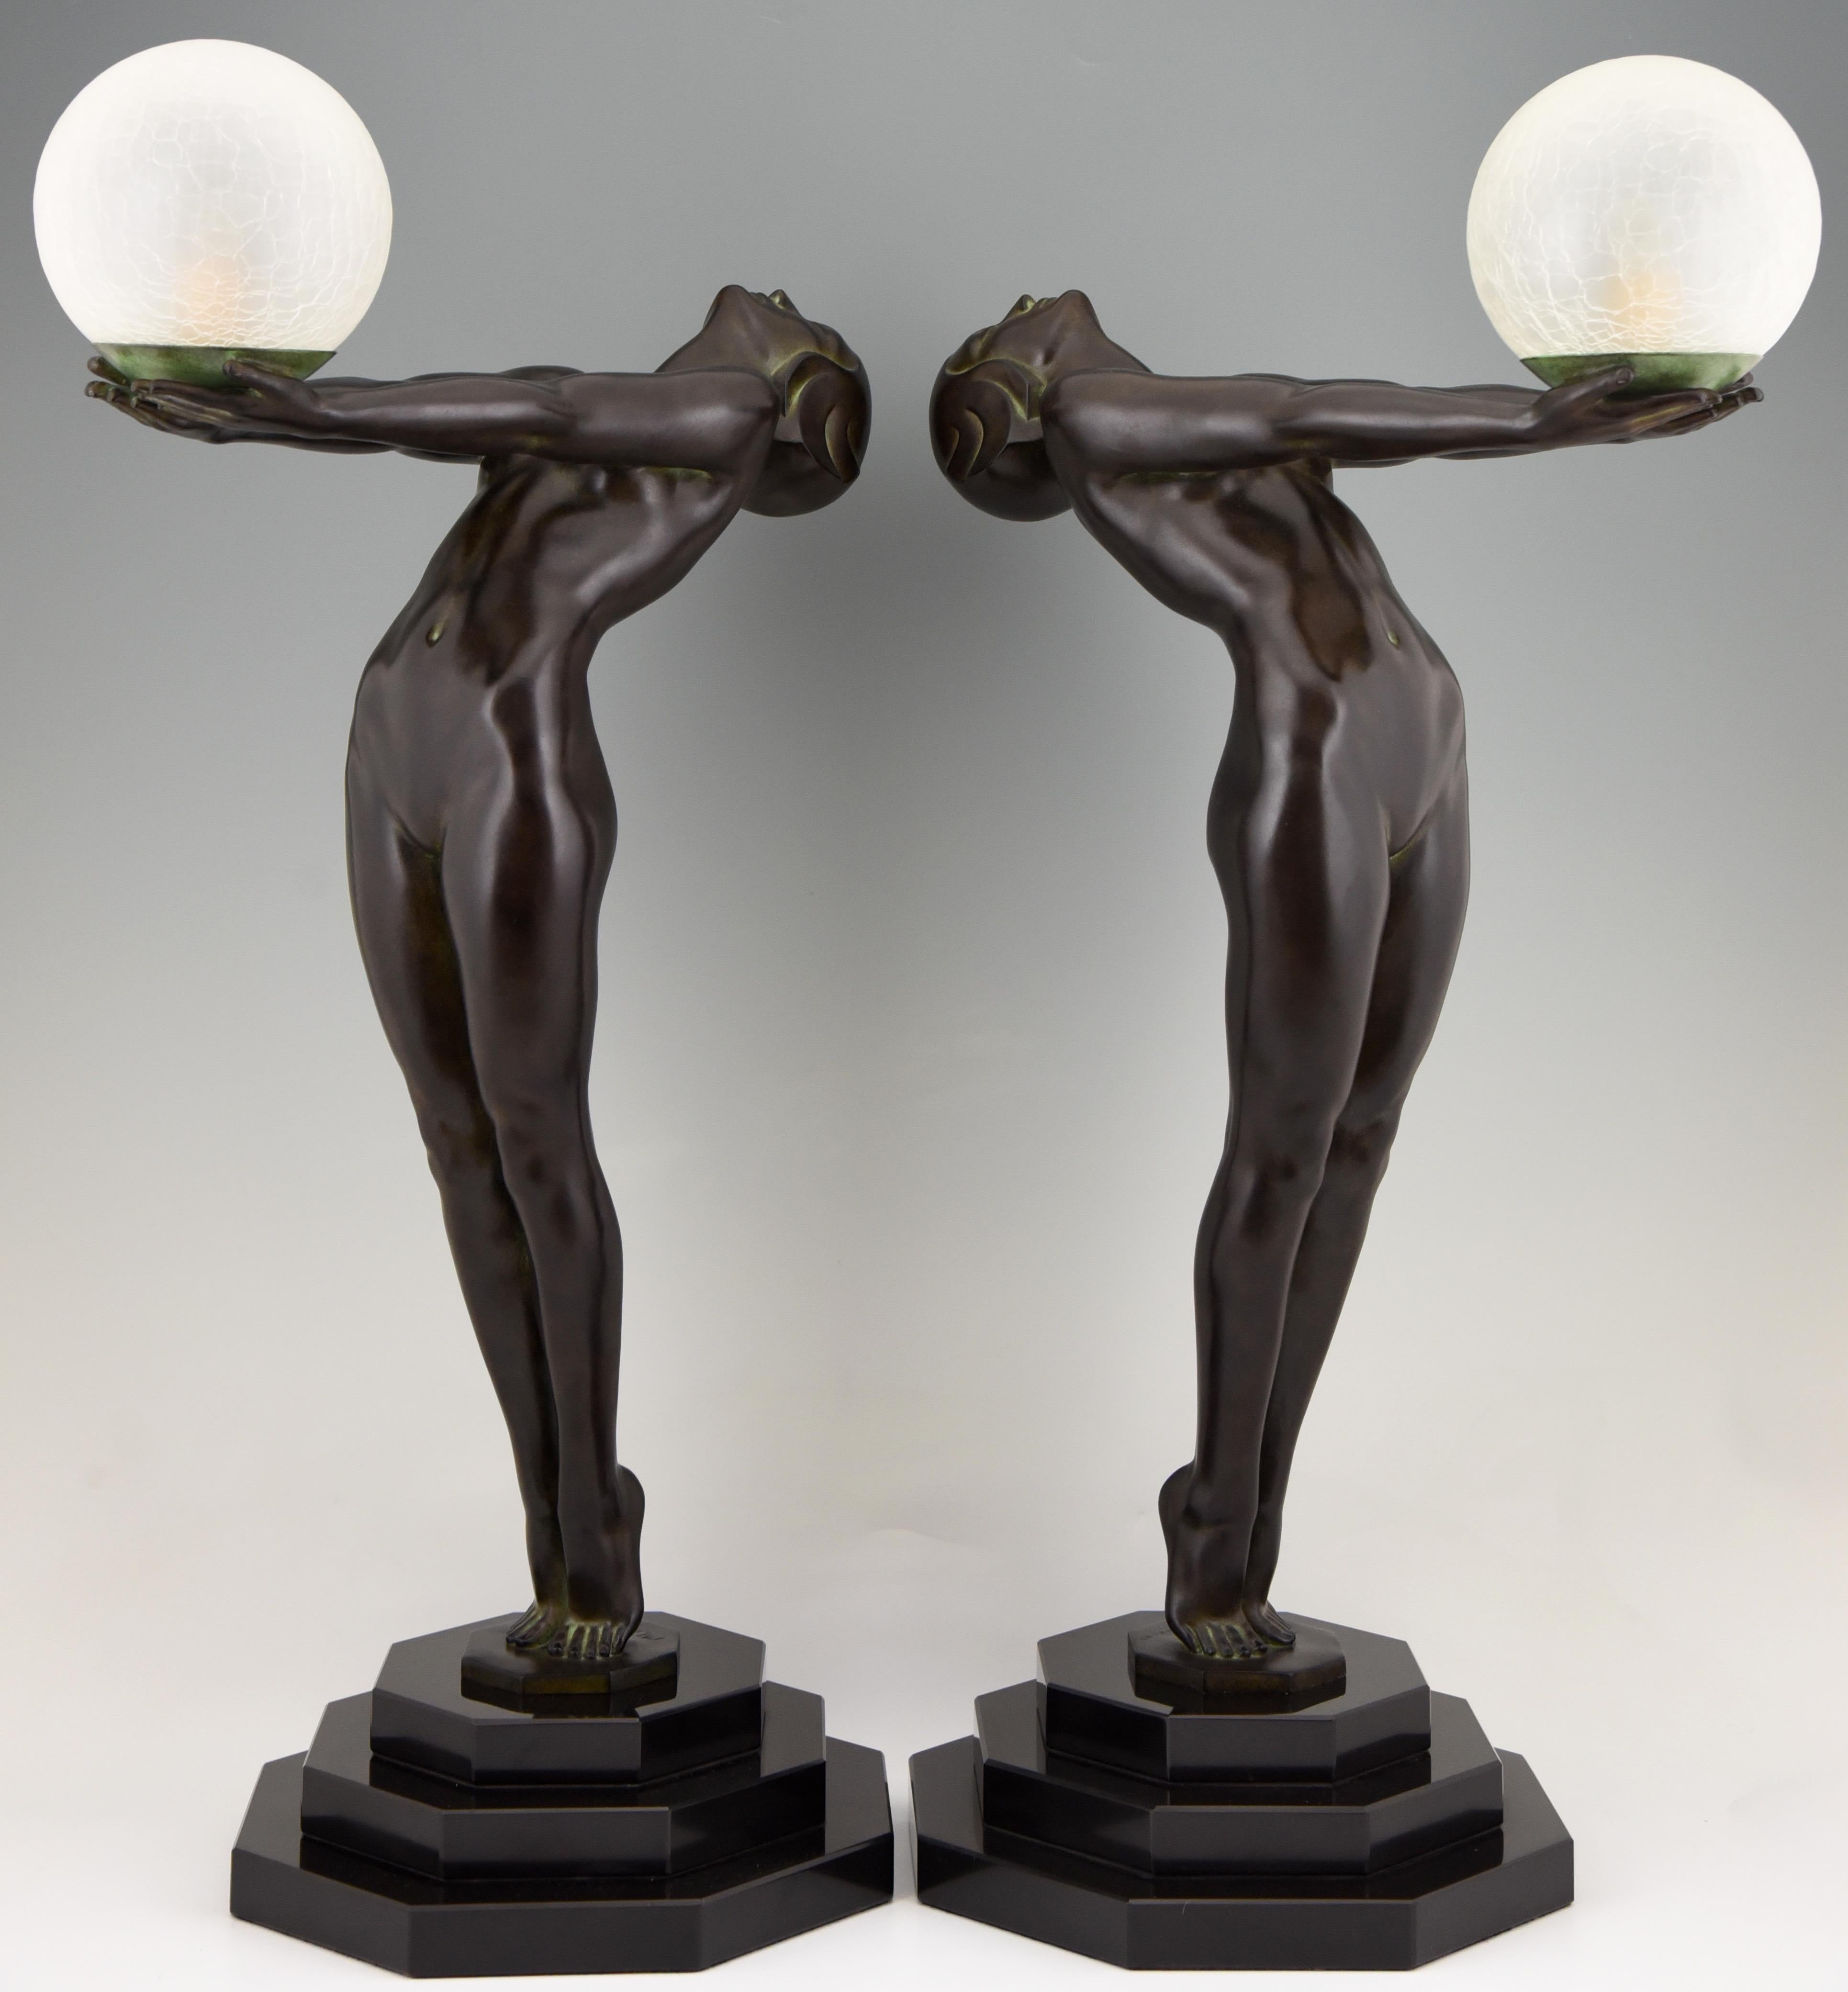 Clarte, lampe de table iconique de 84 cm de haut, de style Art Deco, représentant un nu debout tenant un abat-jour en verre, par Max Le Verrier, avec marque de fonderie.
Conçu en 1928.
Fonte contemporaine posthume à la fonderie Max Le Verrier à